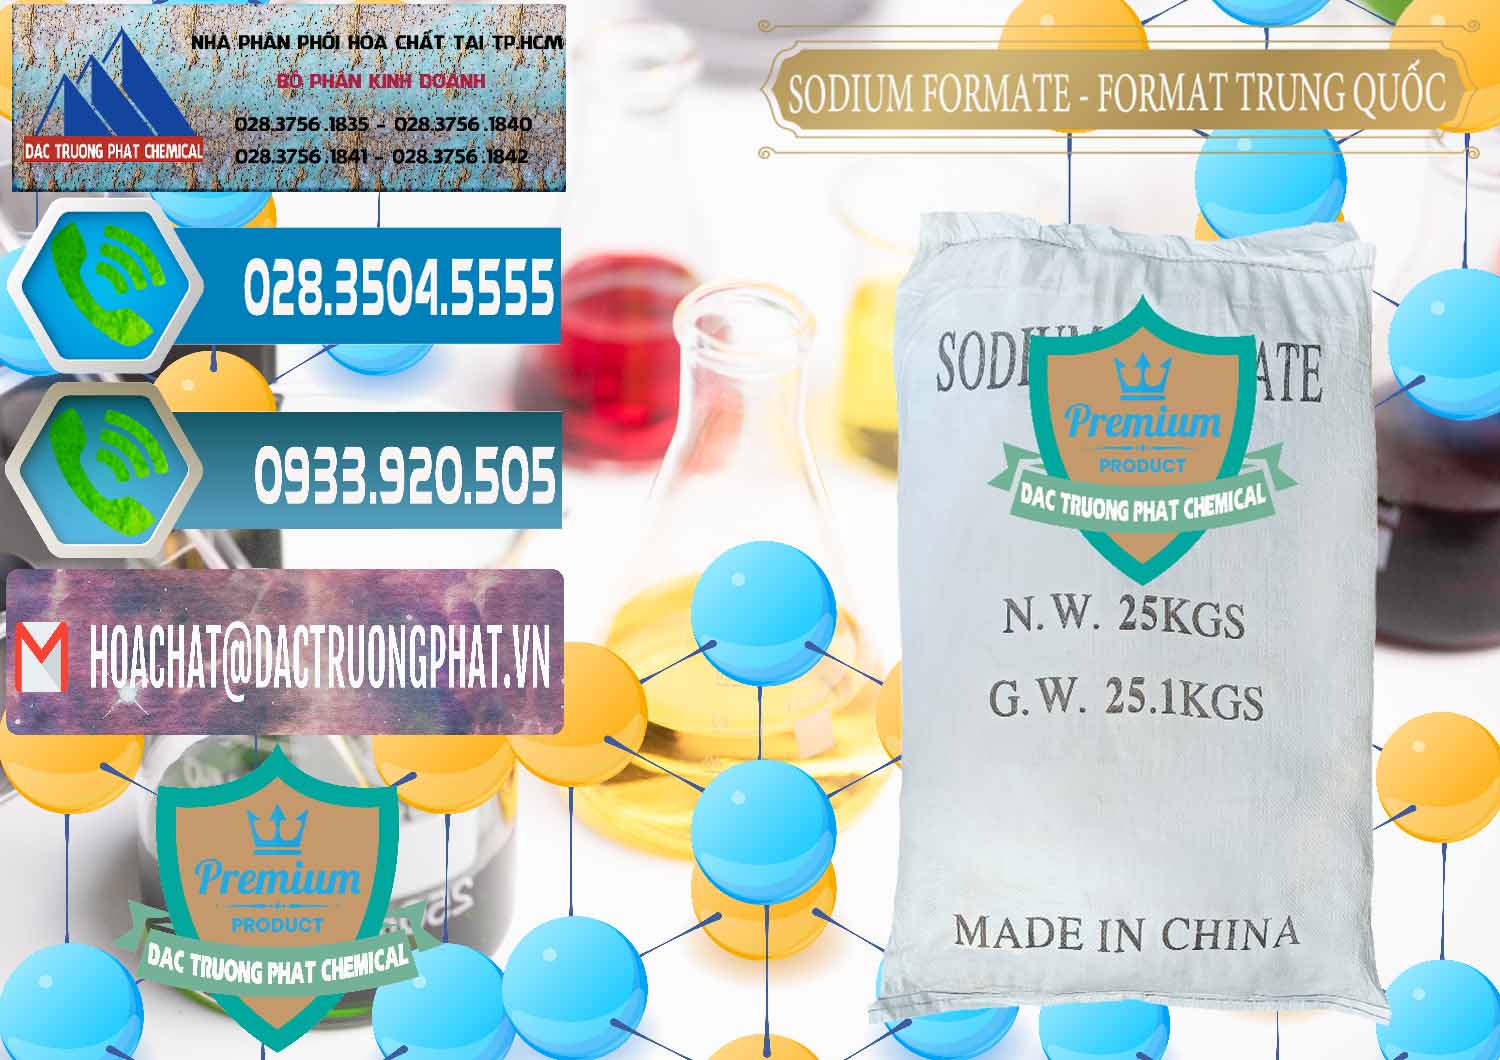 Nơi bán và cung cấp Sodium Formate - Natri Format Trung Quốc China - 0142 - Công ty chuyên kinh doanh - cung cấp hóa chất tại TP.HCM - congtyhoachat.net